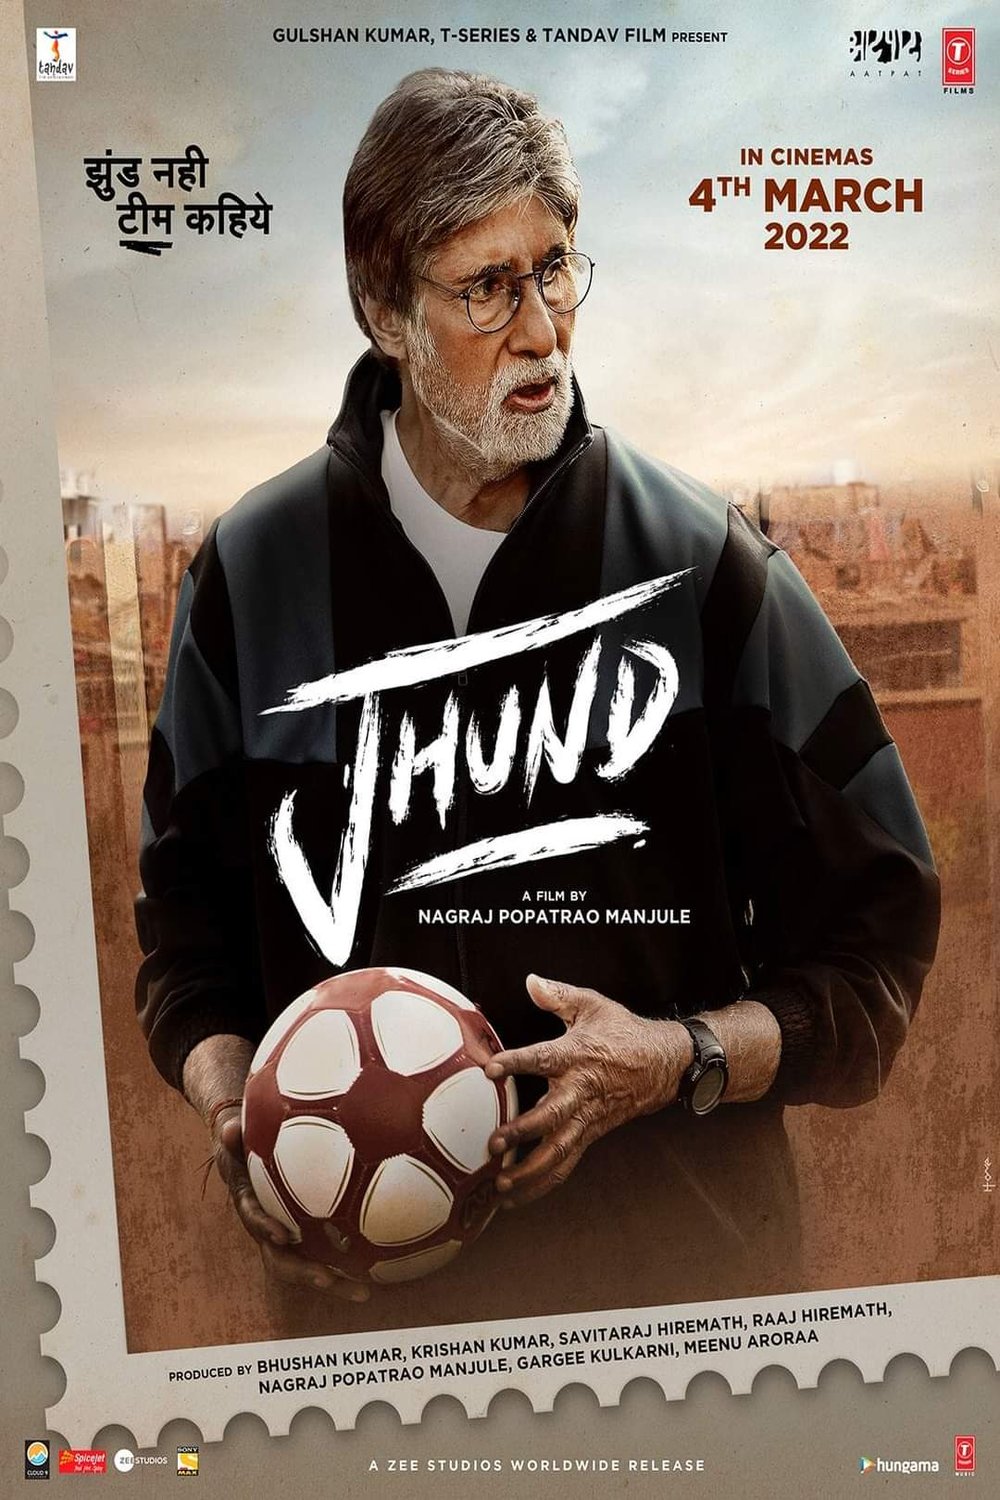 Hindi poster of the movie Jhund